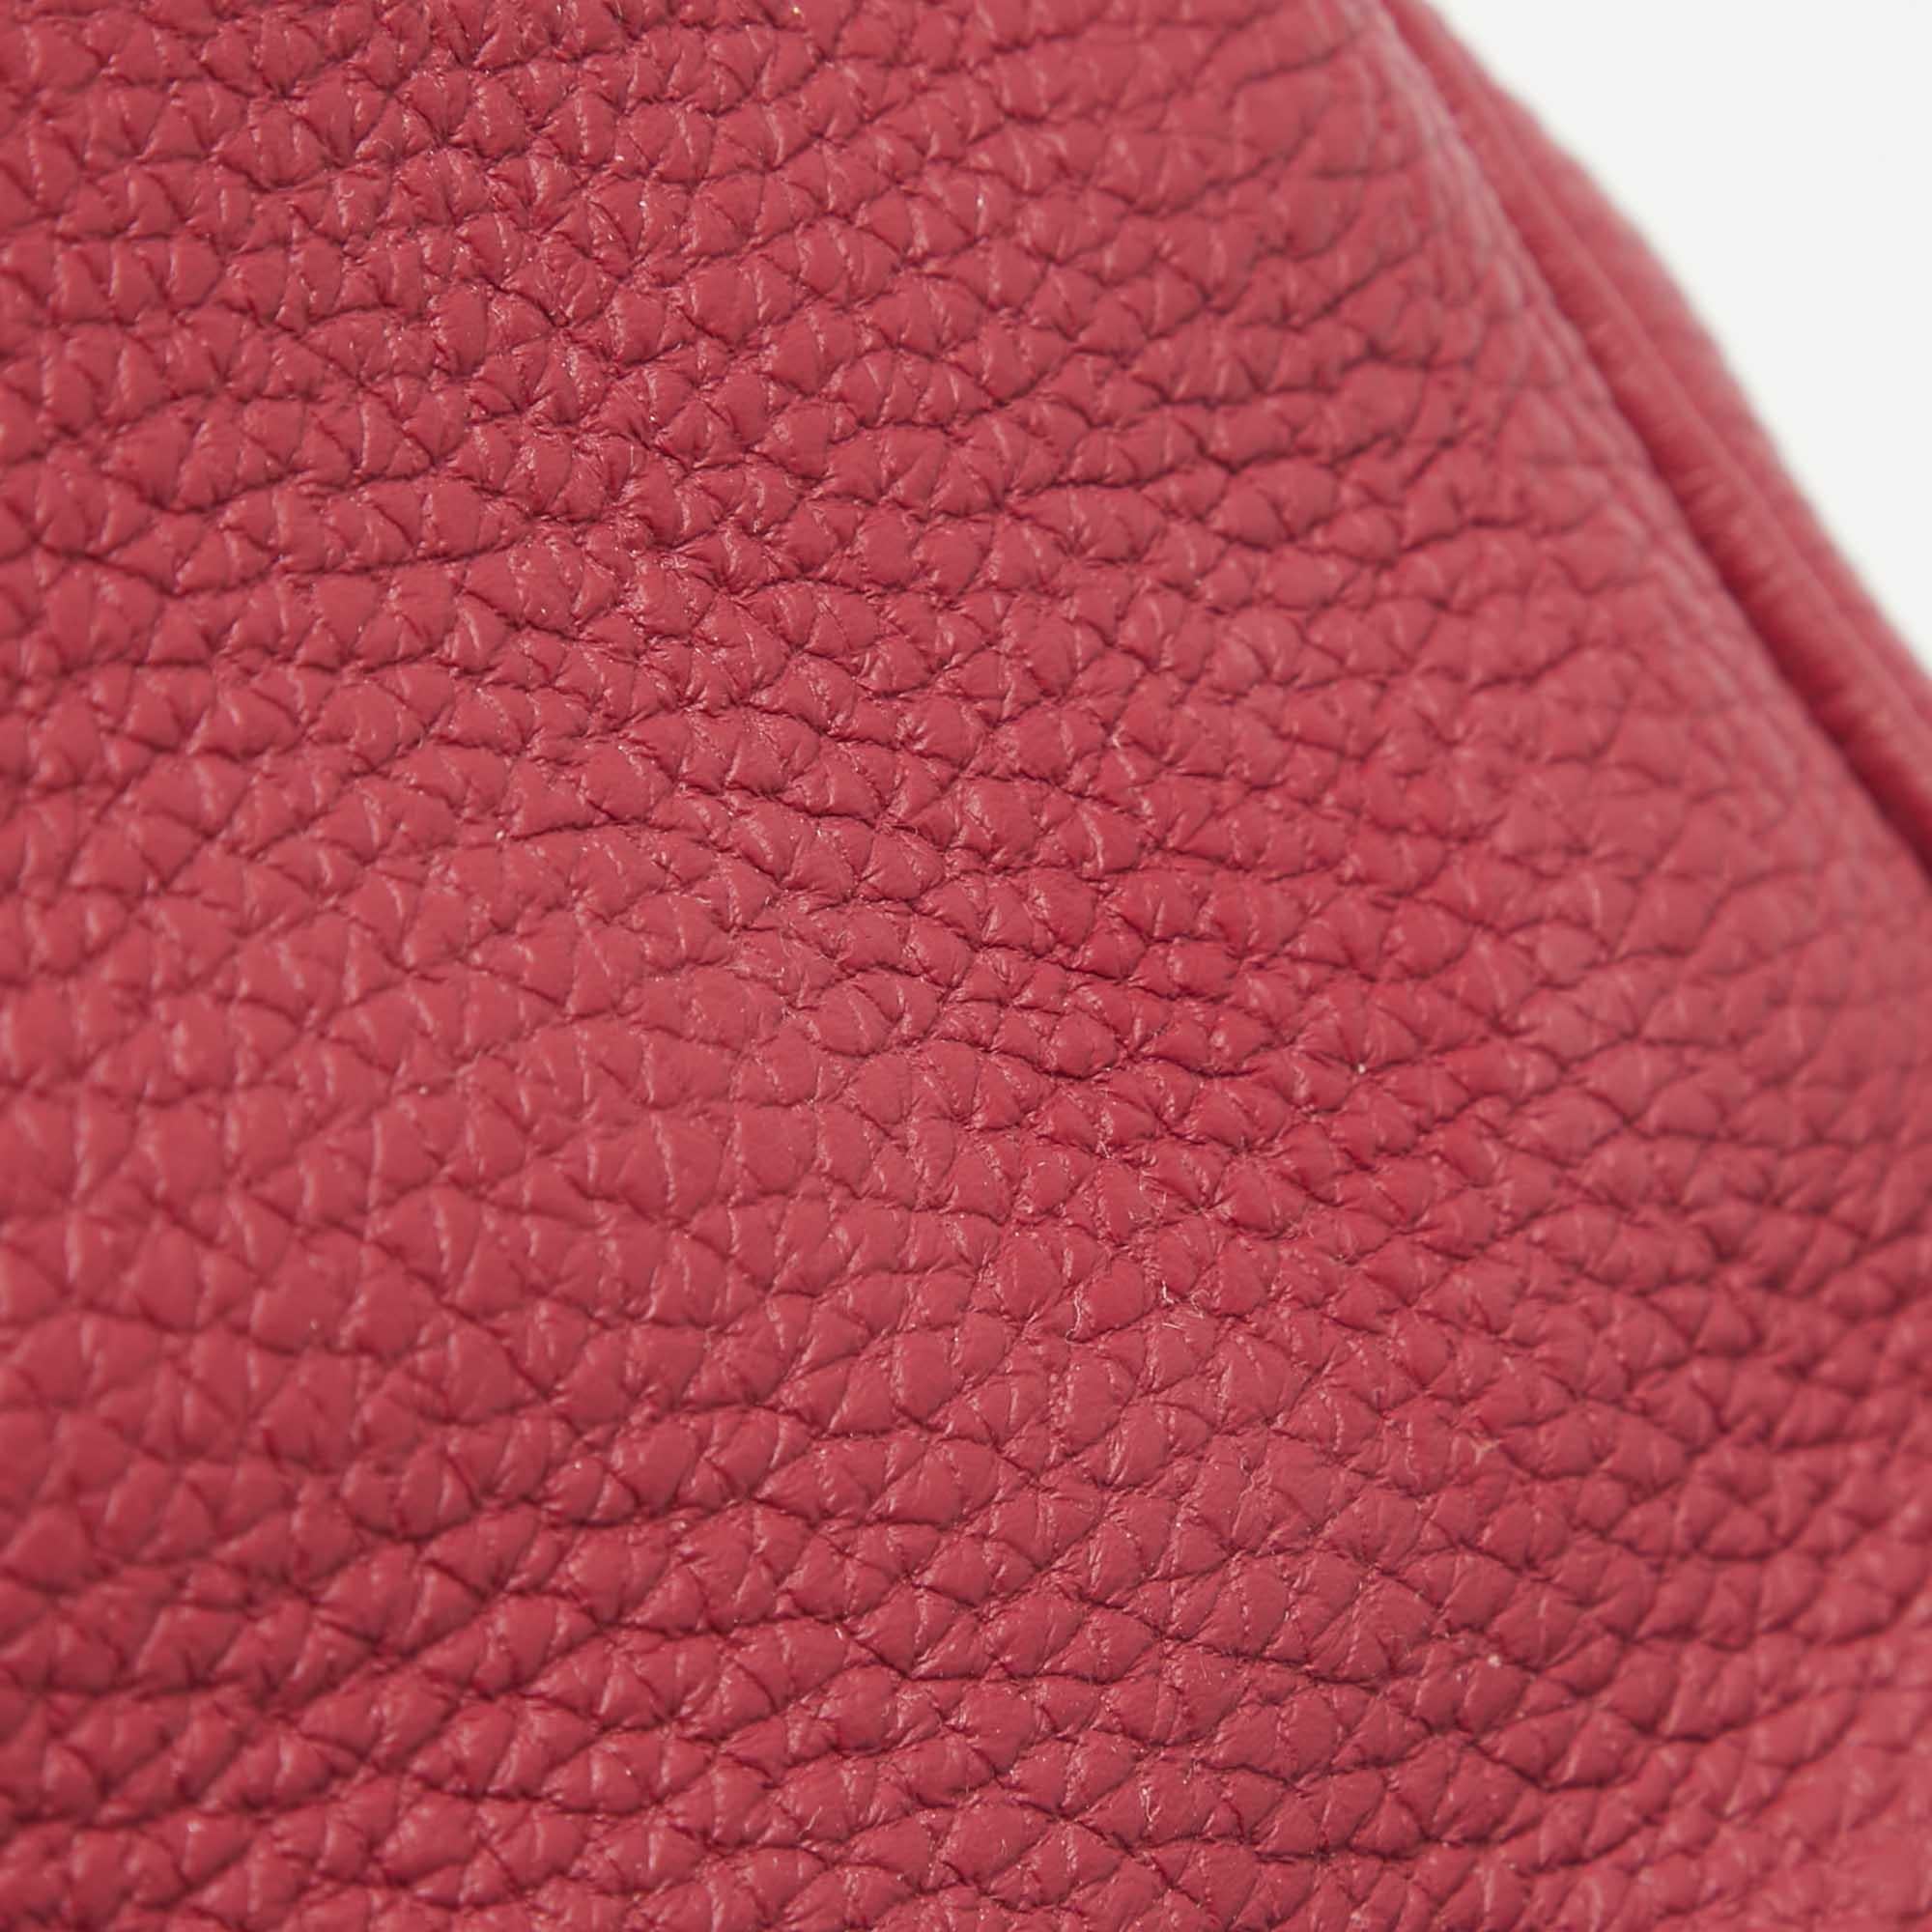 Le Hermès Birkin est à juste titre l'un des sacs à main les plus convoités au monde. Fabriqué à la main à partir de cuir de la plus haute qualité par des artisans qualifiés, il faut de longues heures d'efforts rigoureux pour assembler un Birkin.